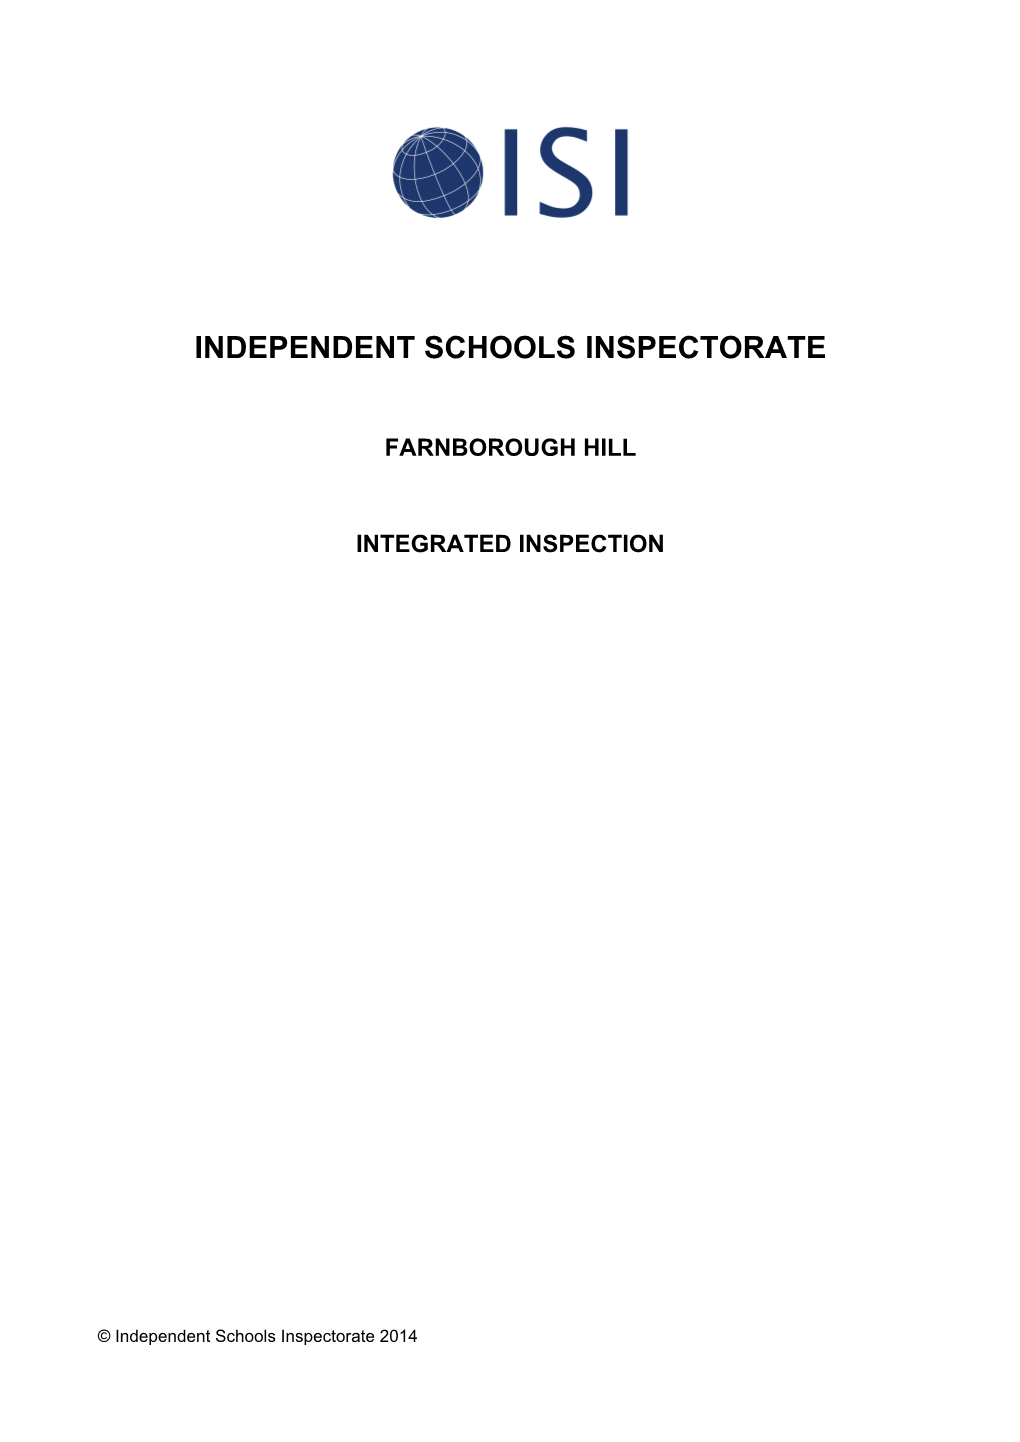 Farnborough Hill ISI Report